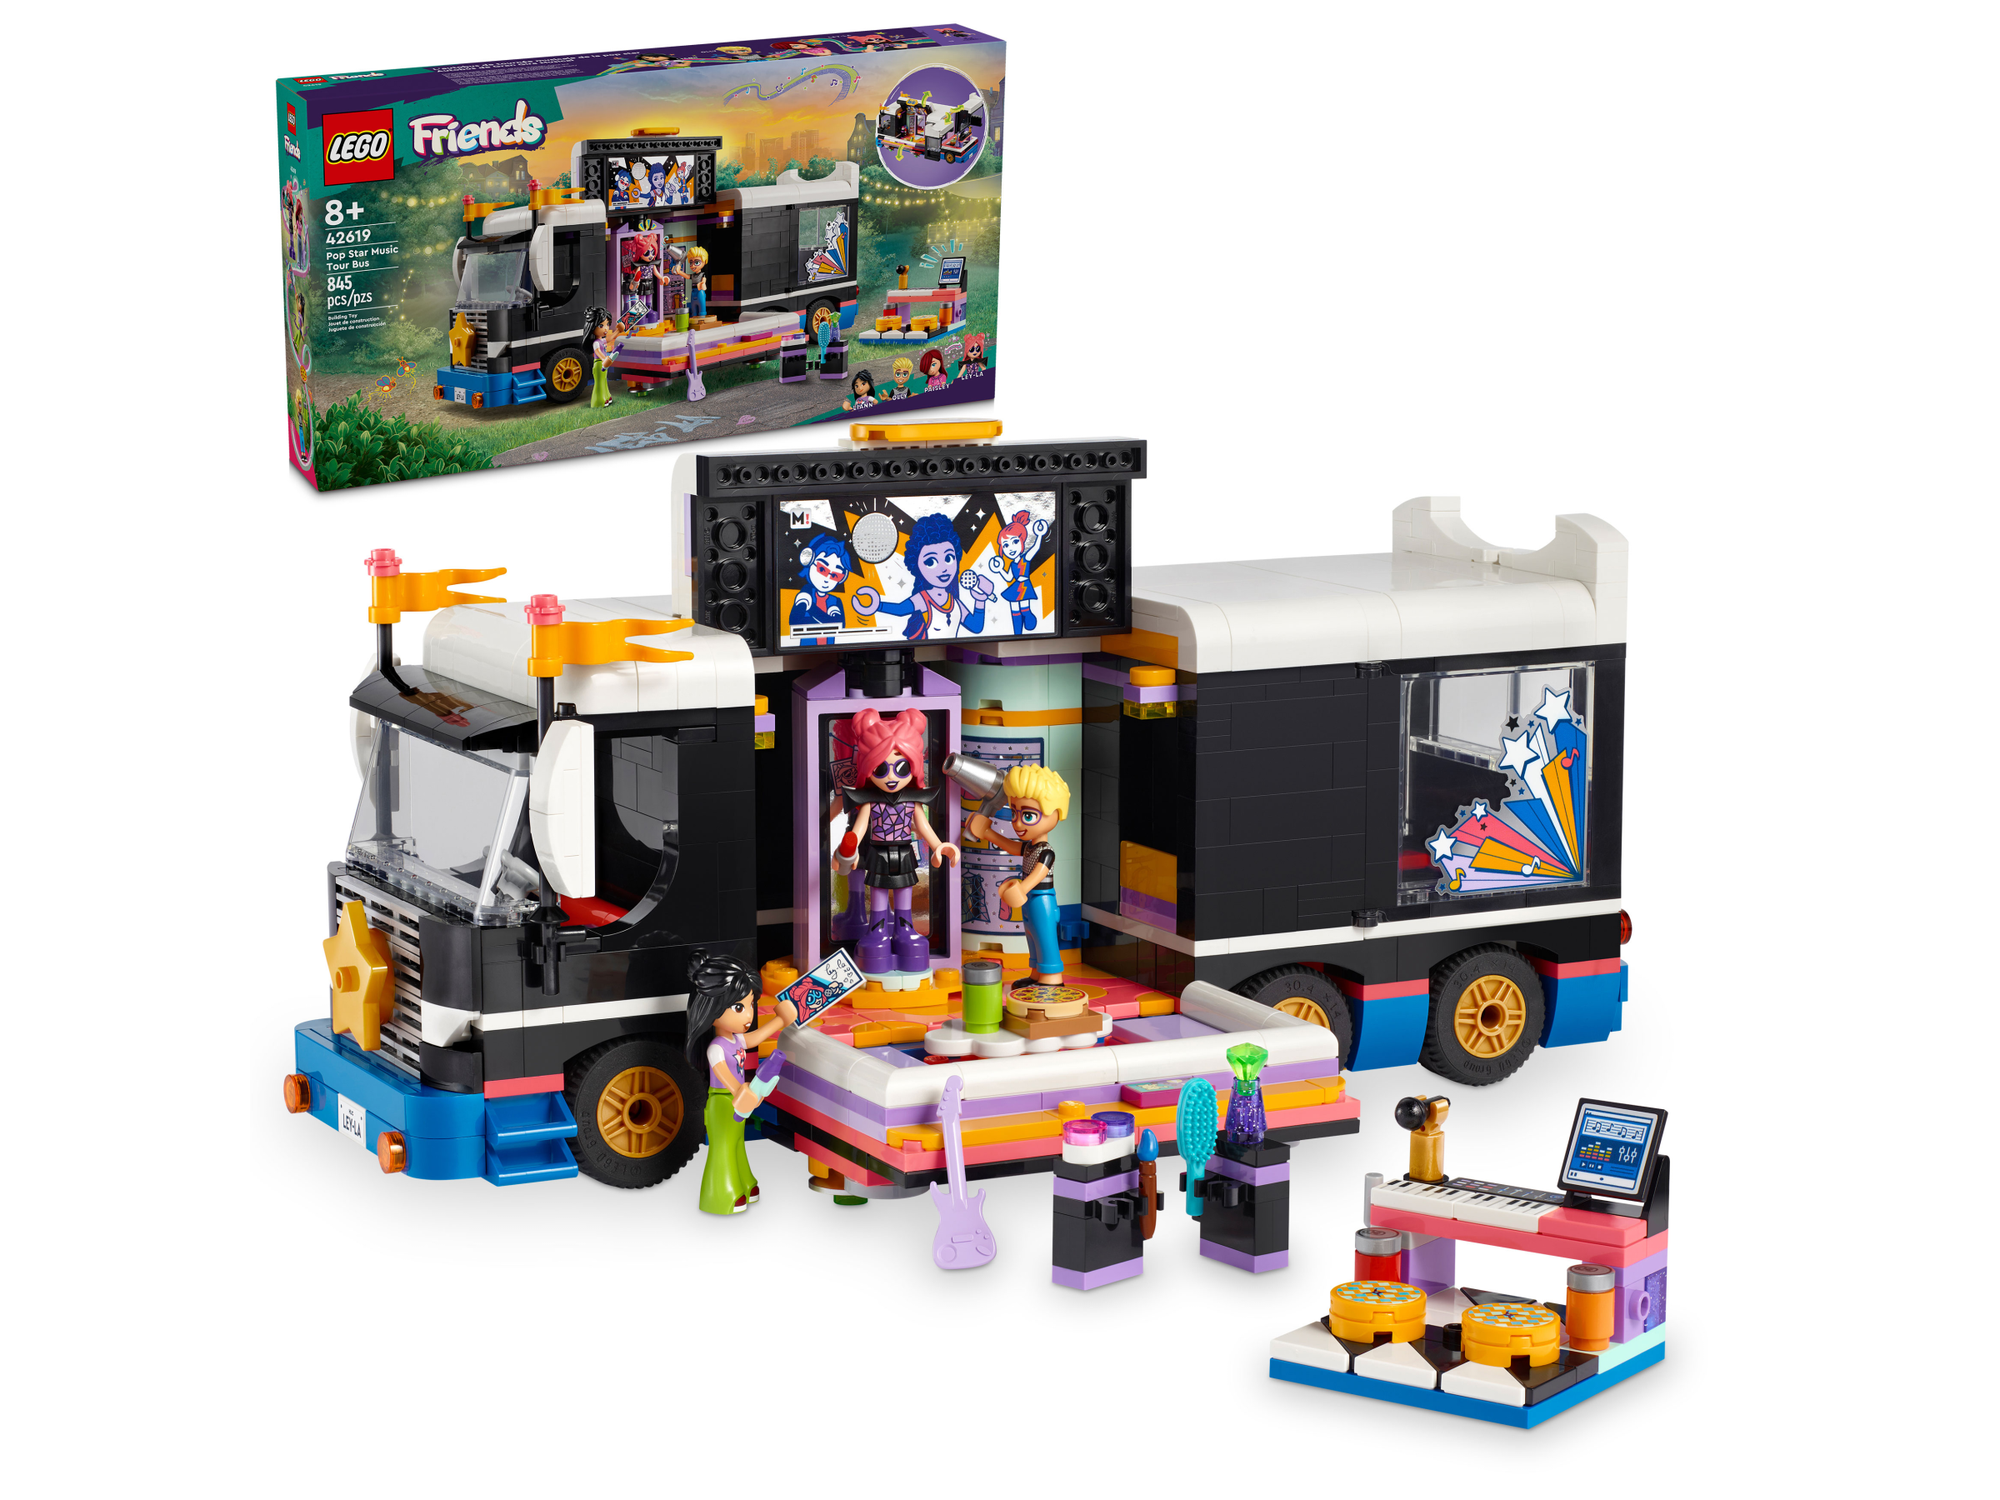 LEGO Friends 42619 Музыкальный туристический автобус поп-звезды, 845 дет.